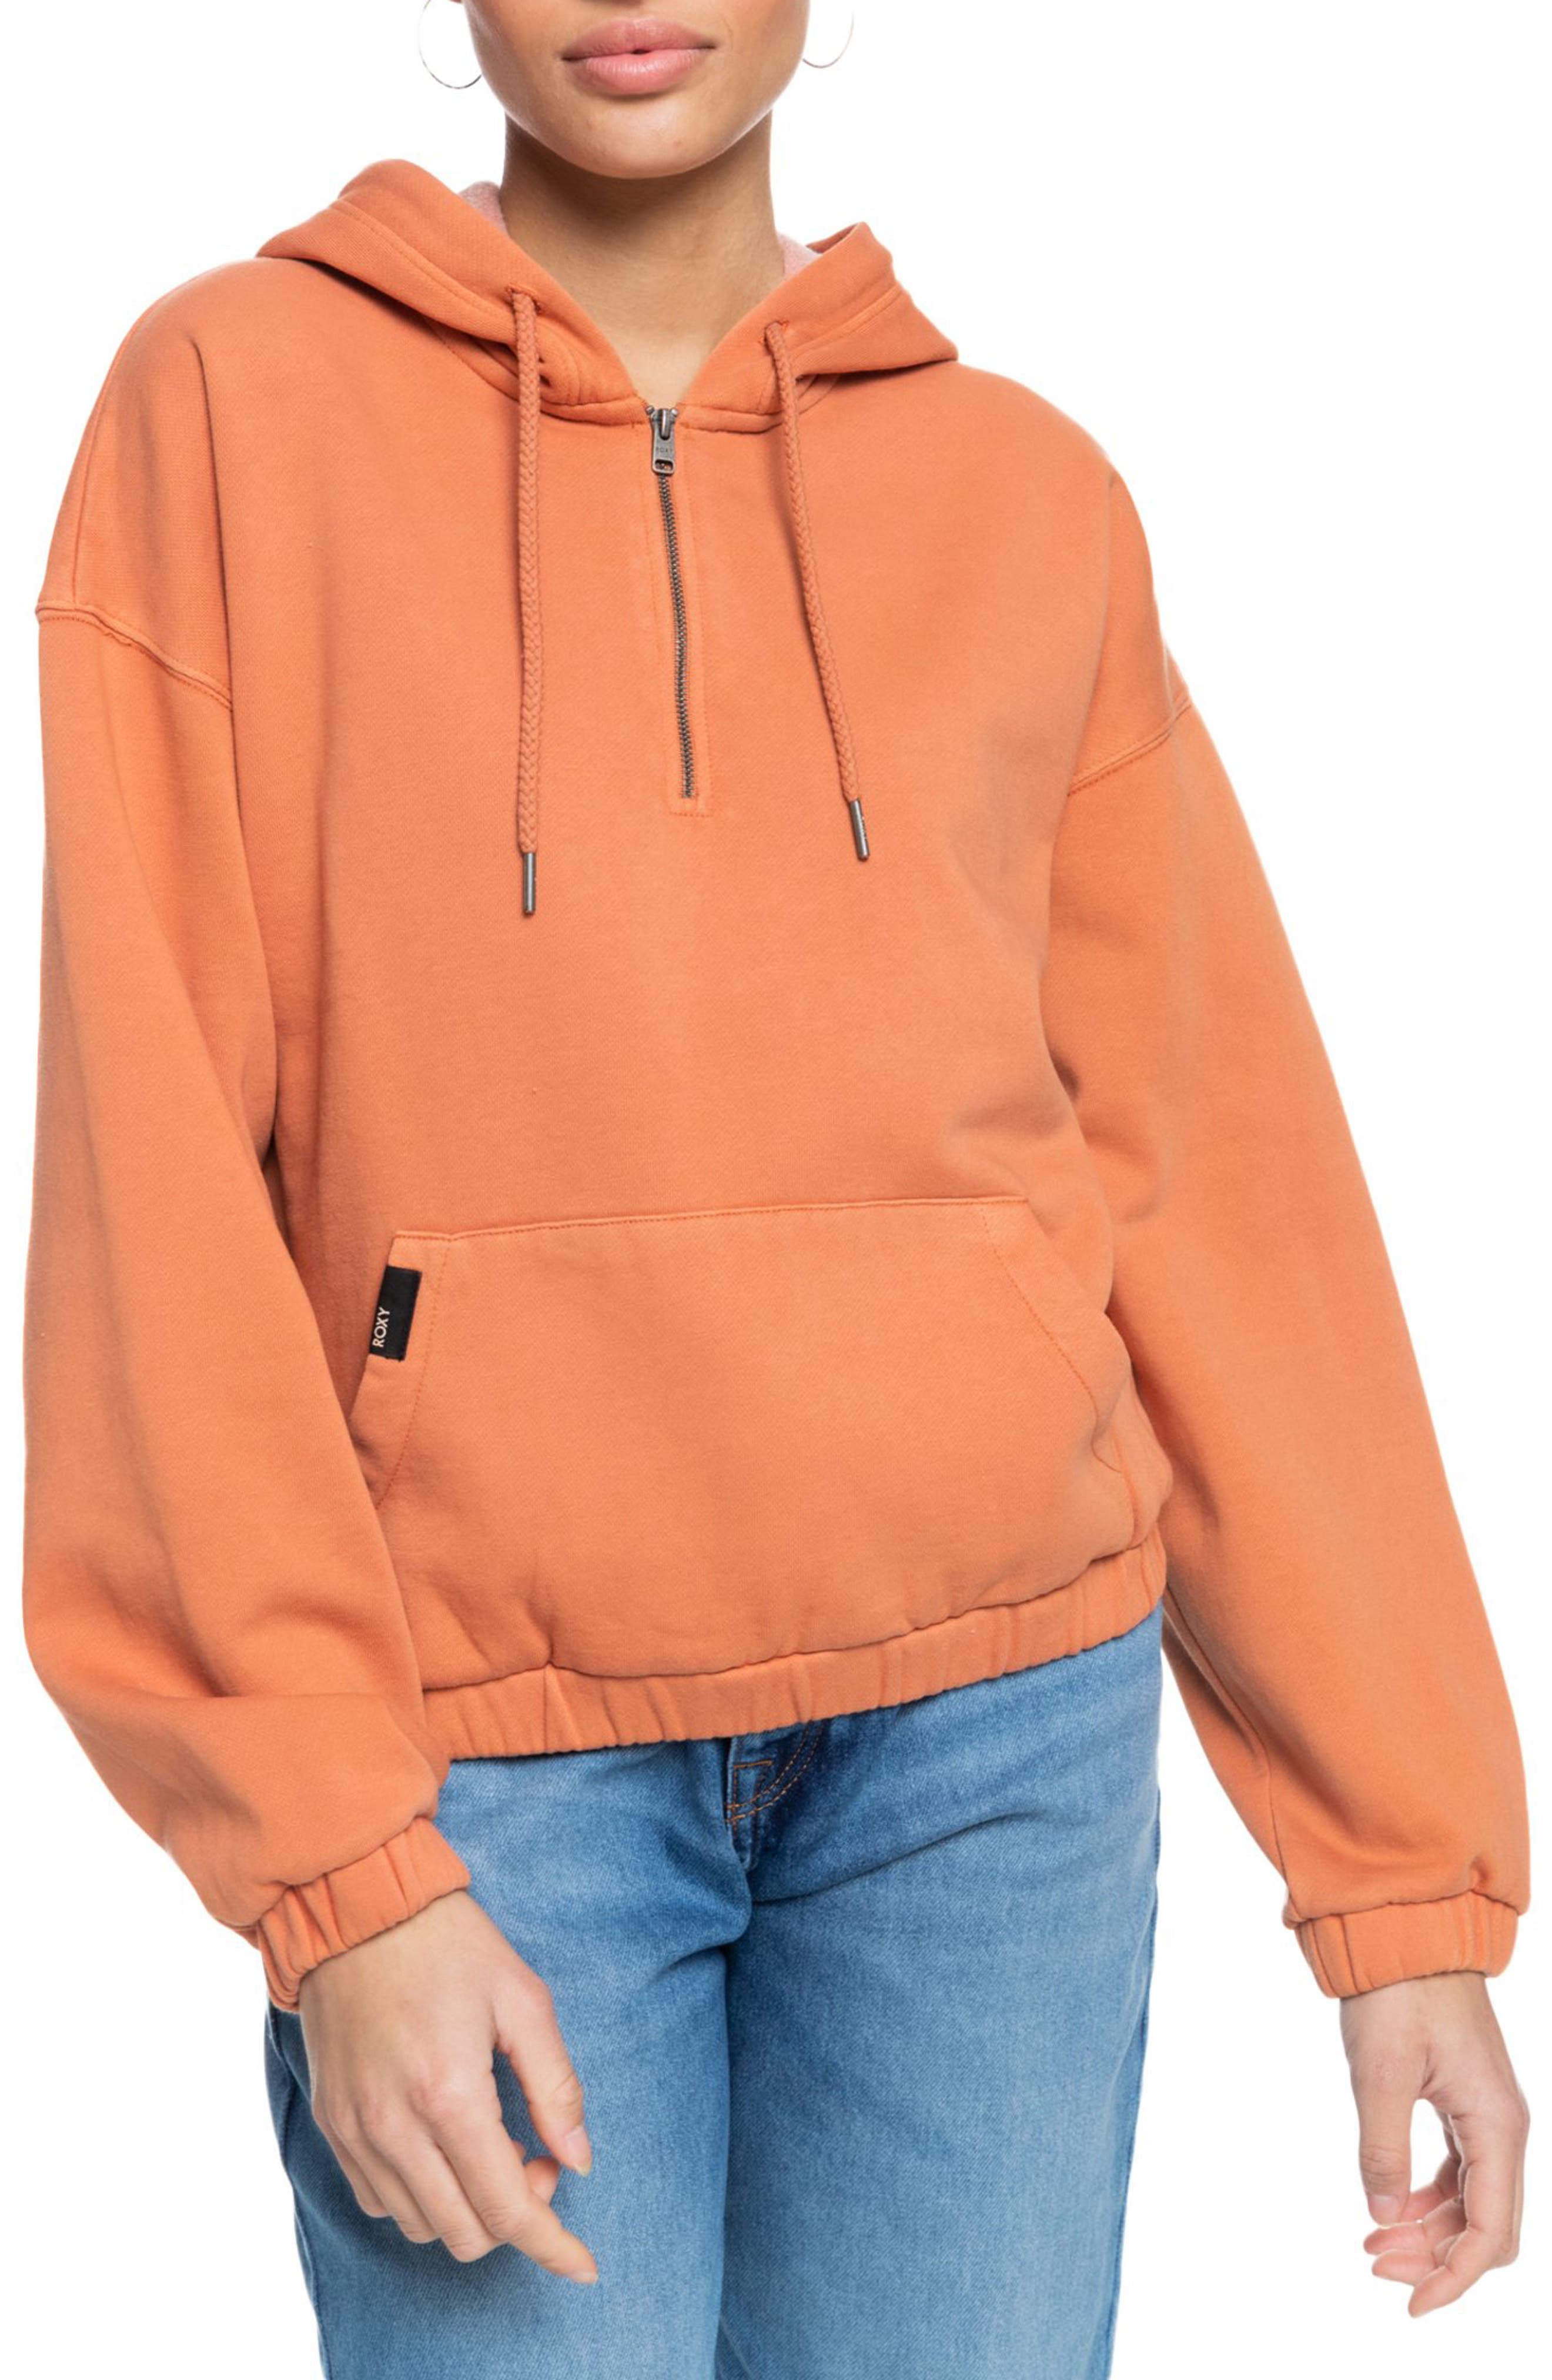 Roxy Womens Sandy Coast Stripe Cozy Hooded Top Hooded Sweatshirt